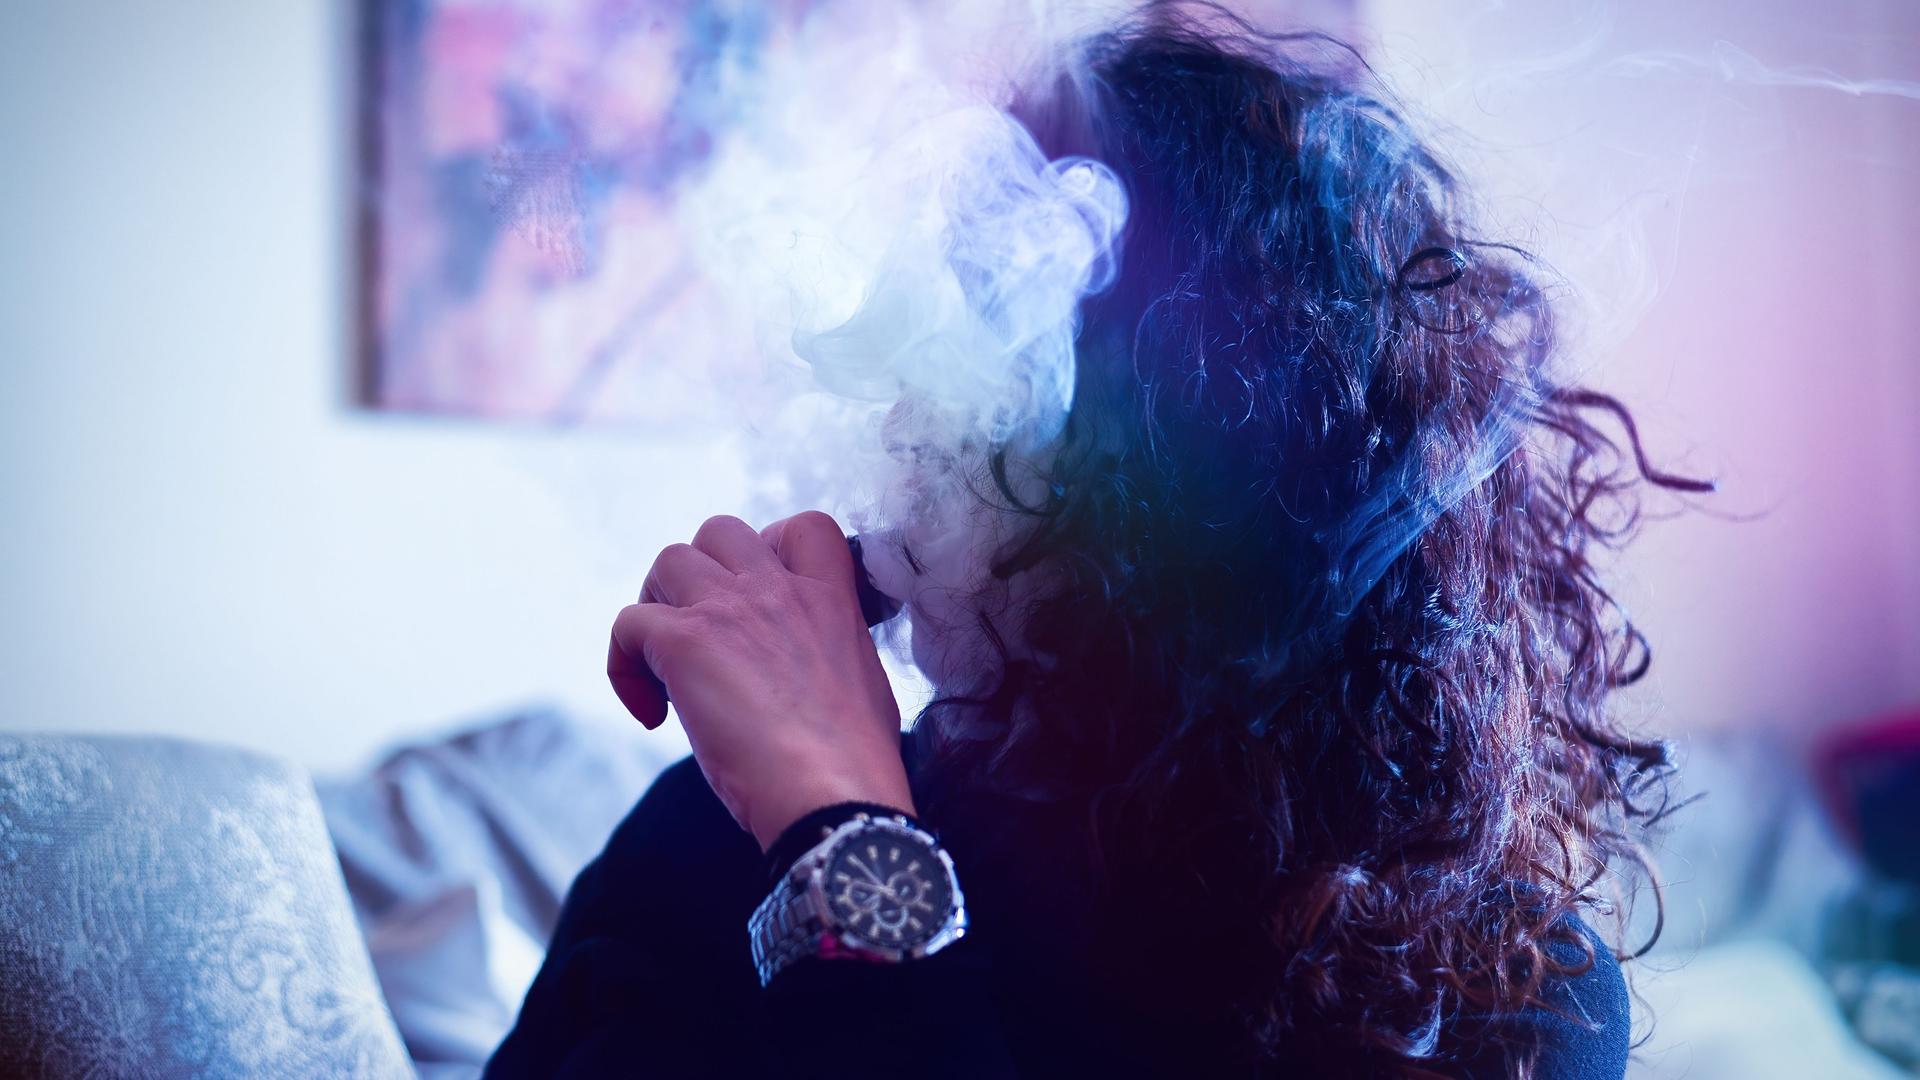 Eine junge Frau raucht eine E-Zigarette. Ihr Gesicht verschwindet hinter dem Dampf.